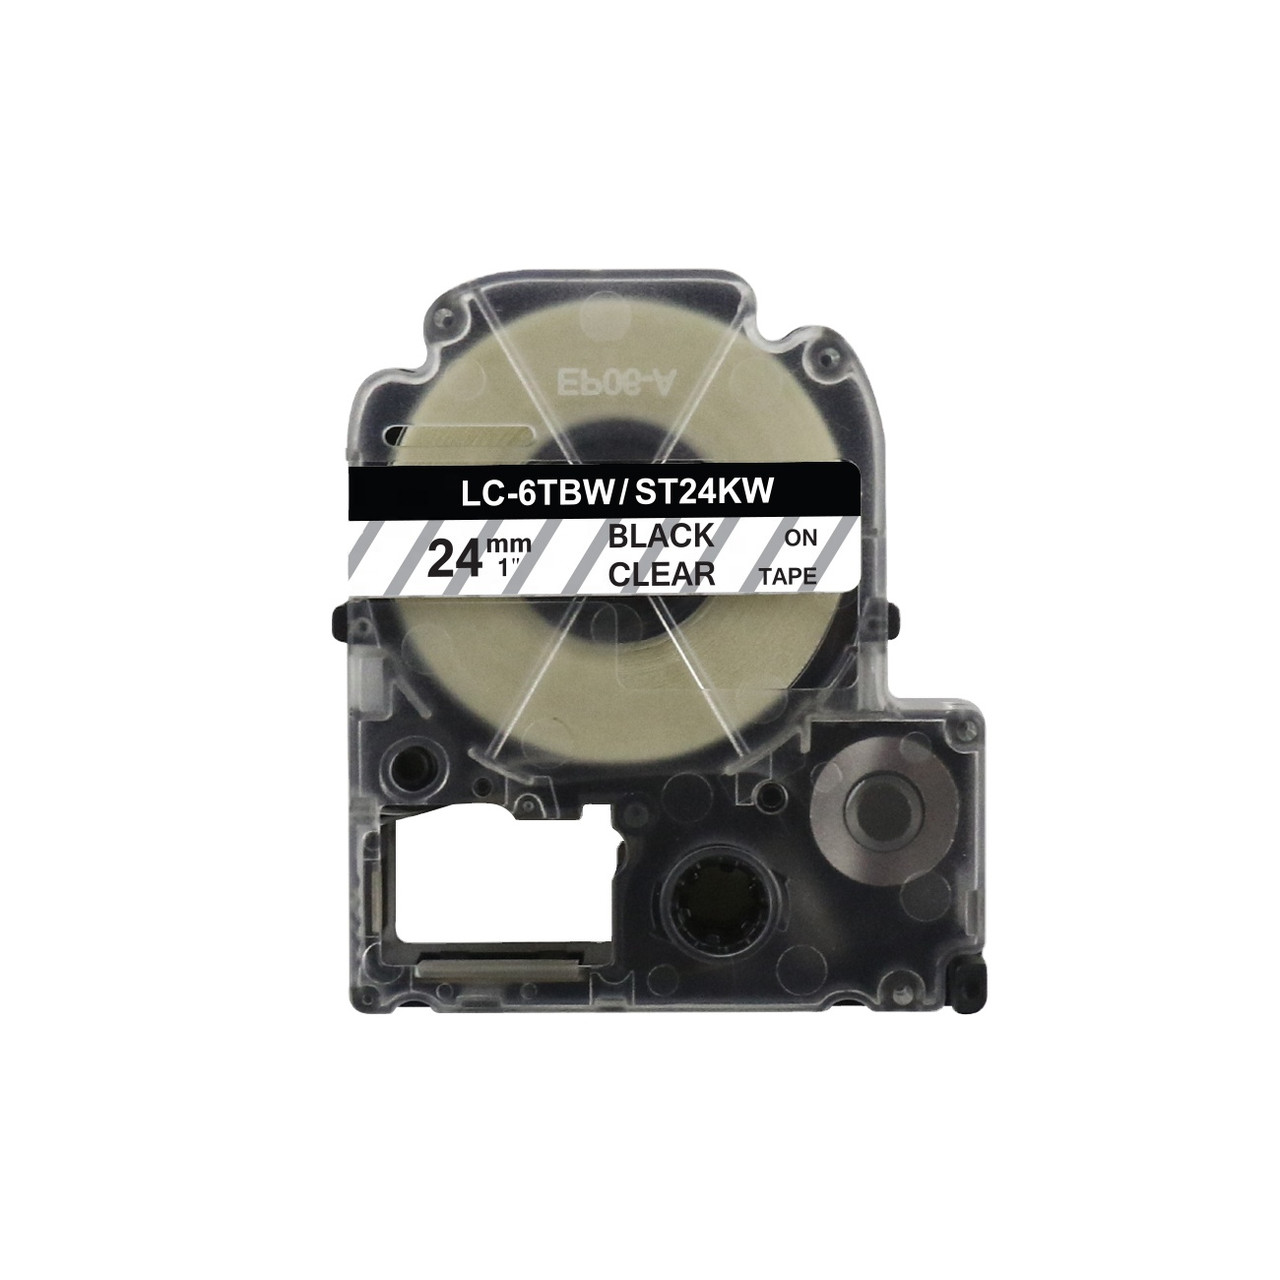 Картридж LC-6TBW  для Epson LabelWorks LW-300, LW-400 (лента 24mmx8m) ,черный на прозрачном